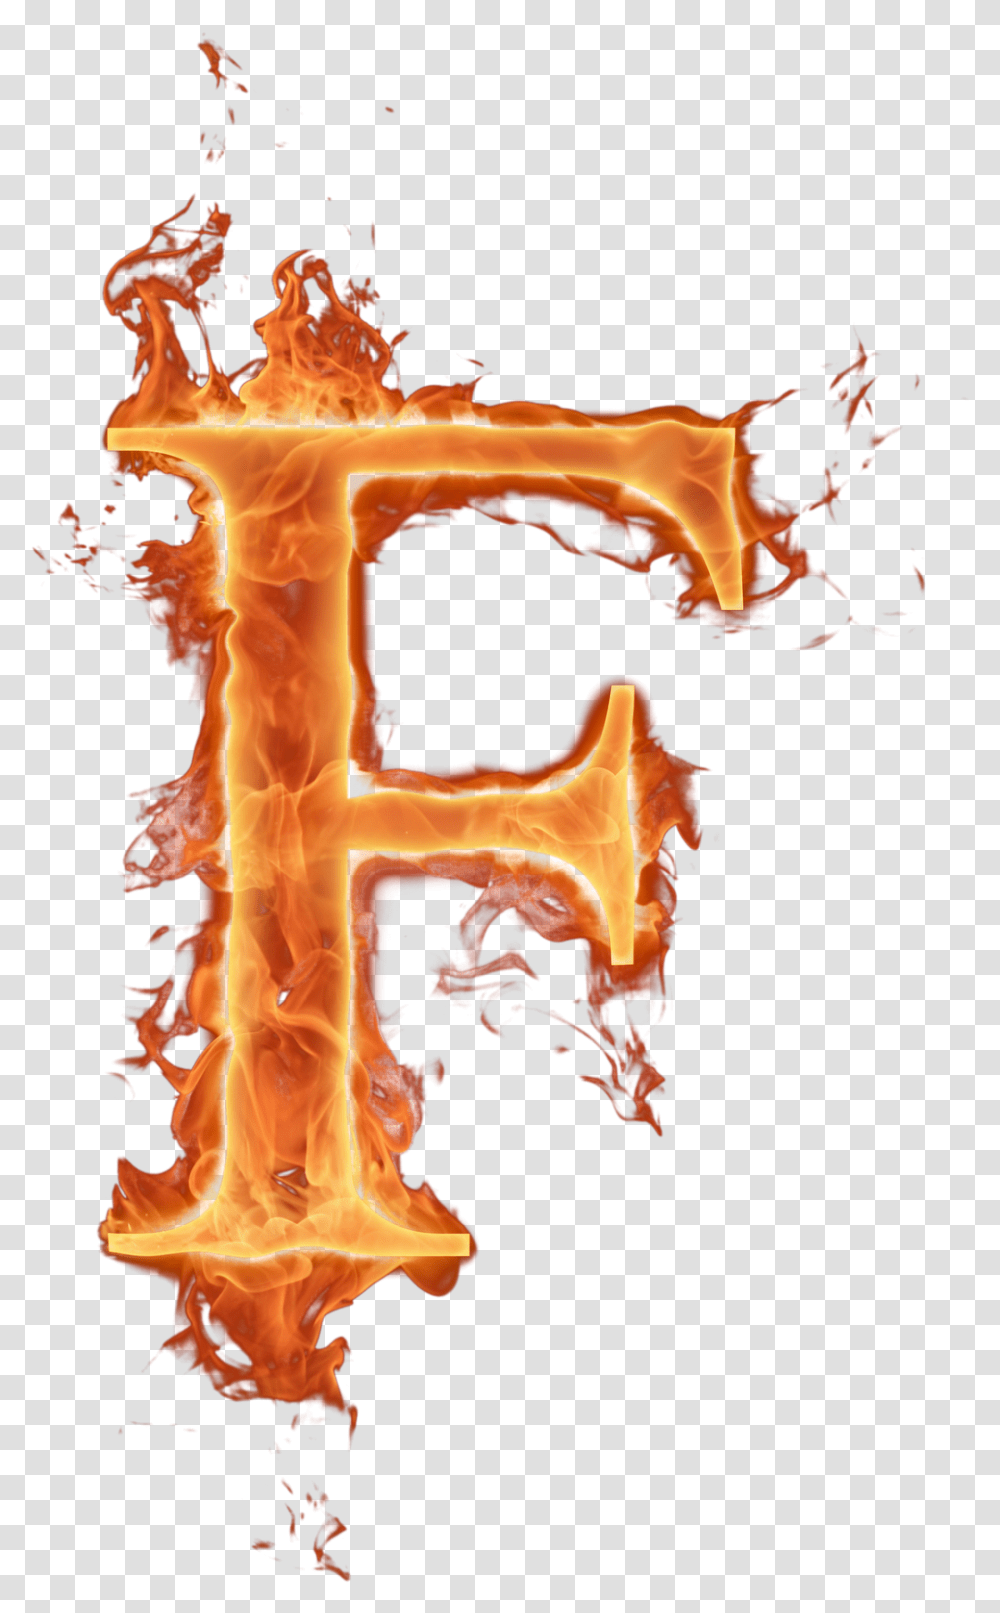 Letras Em Efeito Fogo Fire E Text, Flame, Person, Human, Alphabet Transparent Png